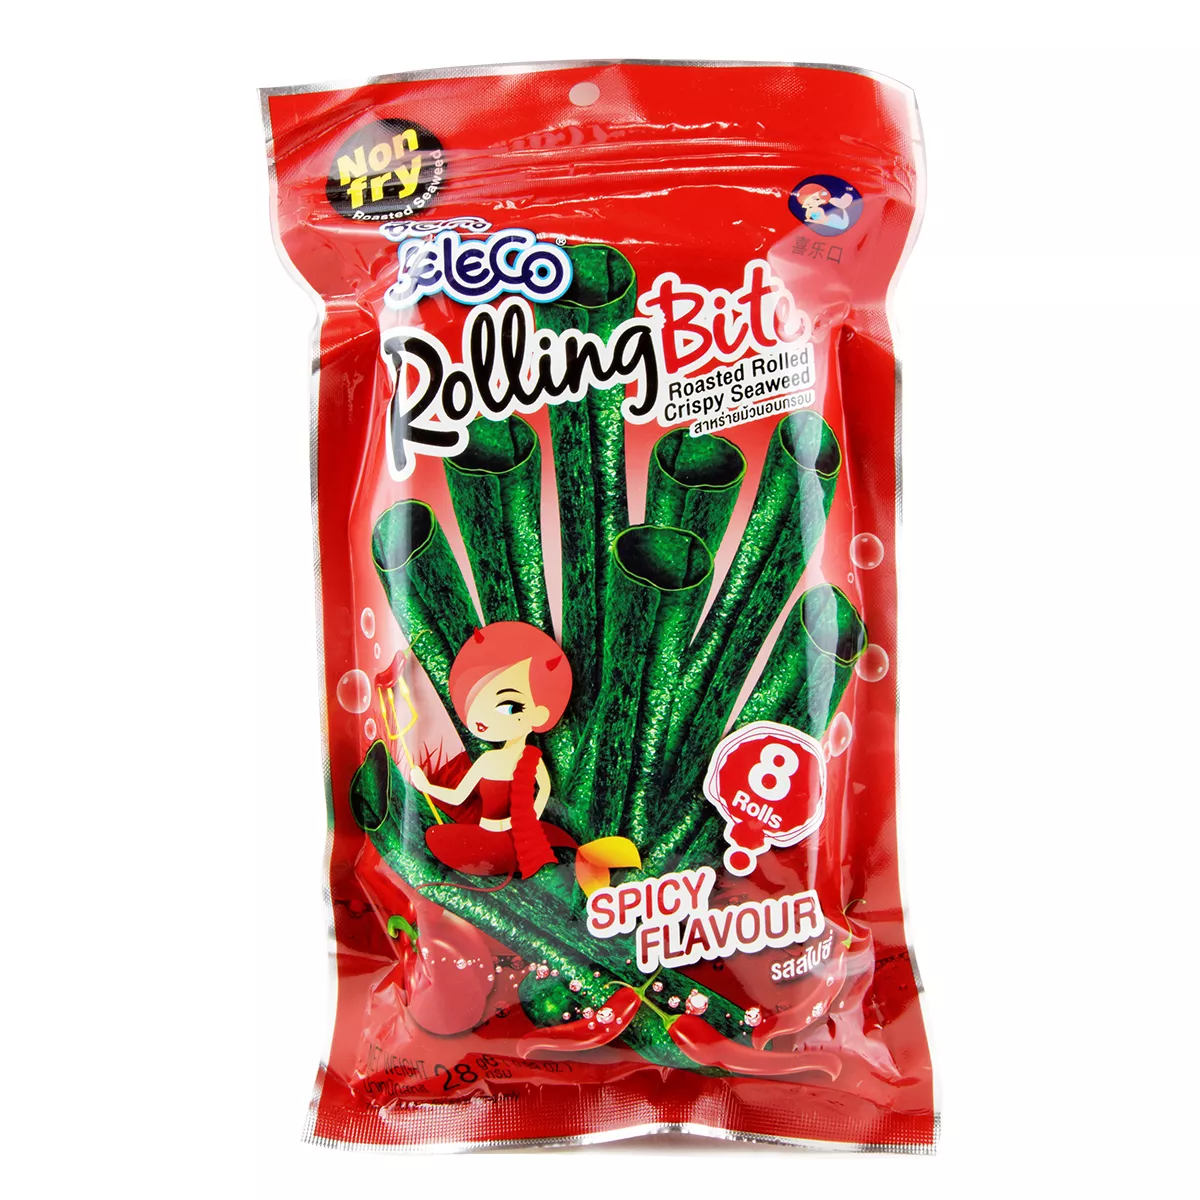 Snack alge prajite Spicy SELECO 28g, [],asianfood.ro